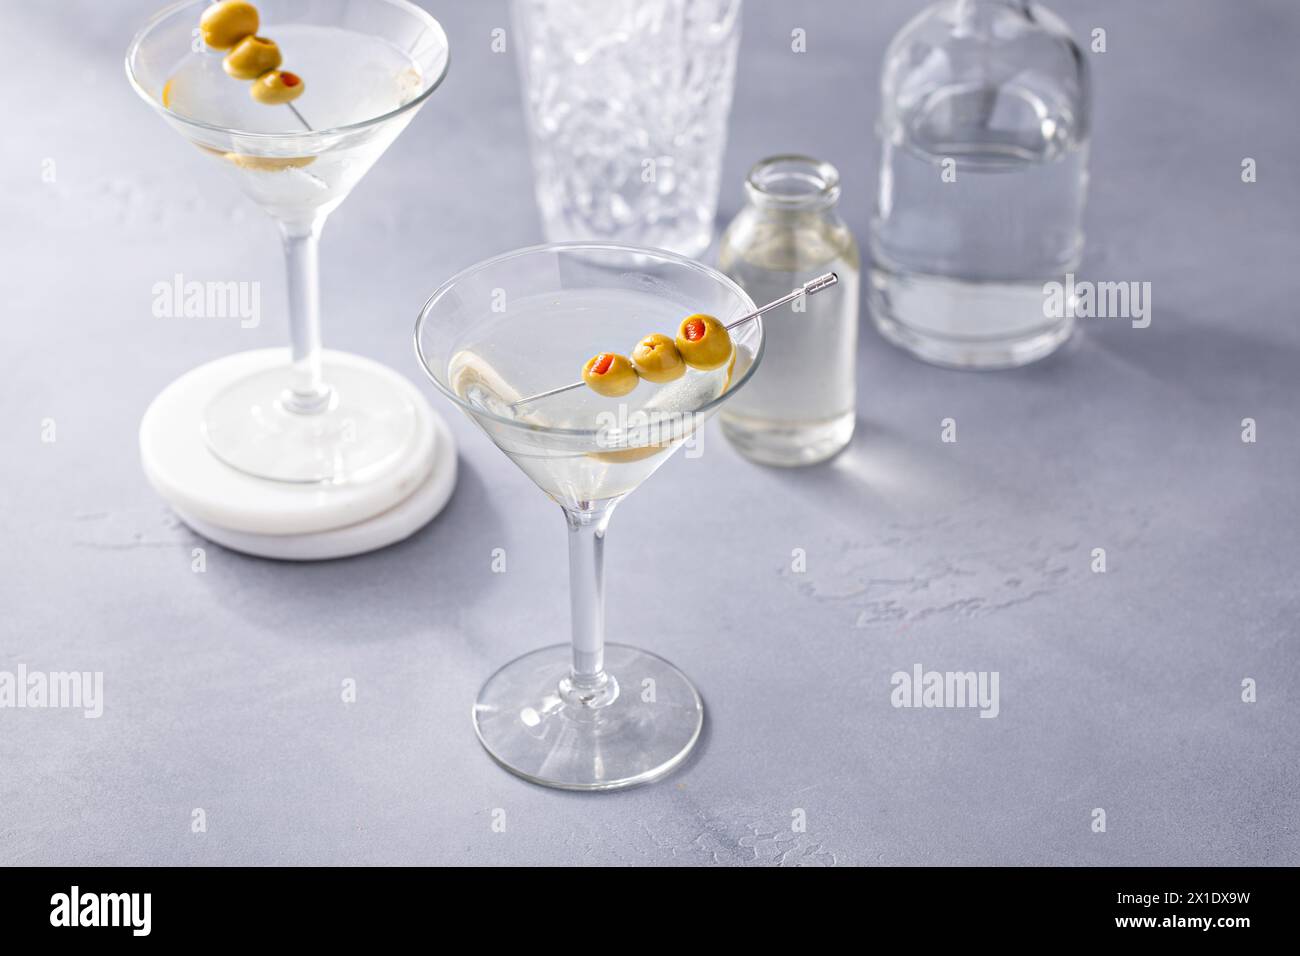 Martini avec garnitures d'olive et de salami, cocktail de martini sale dans un verre traditionnel Banque D'Images